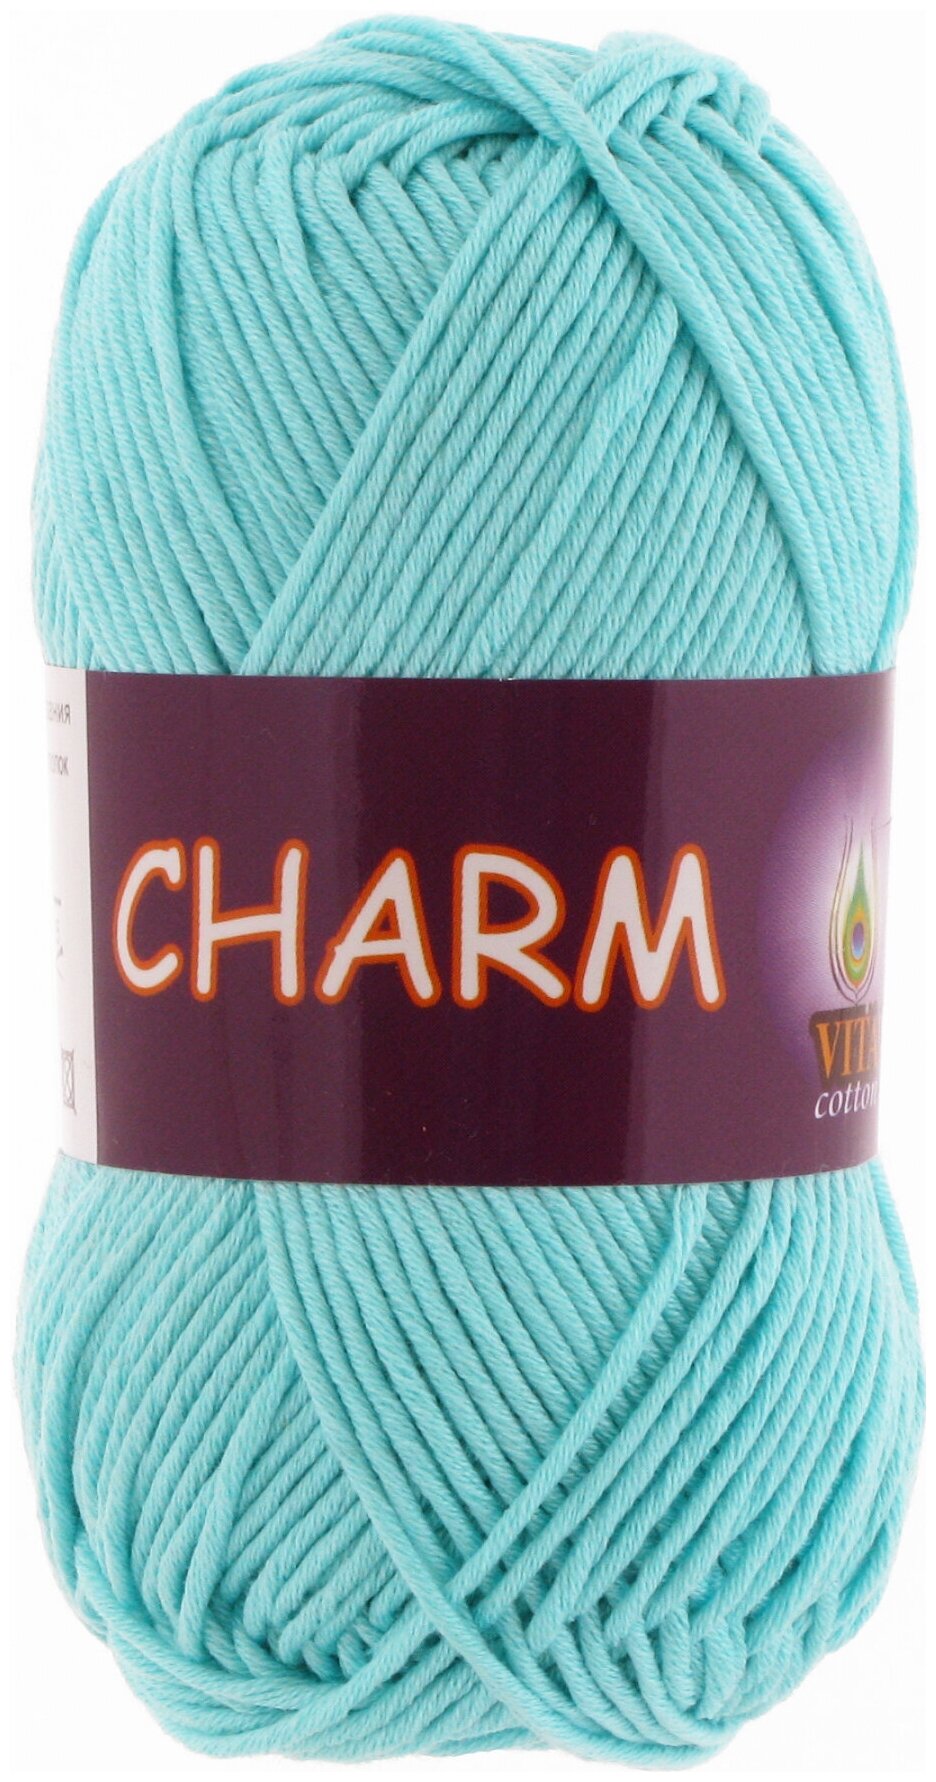 Пряжа для вязания VITA CHARM (Шарм), цвет: 4185 (бирюзовый); 2 мотка, состав: 100% мерсеризованный хлопок, вес: 50 г, длина: 106 м